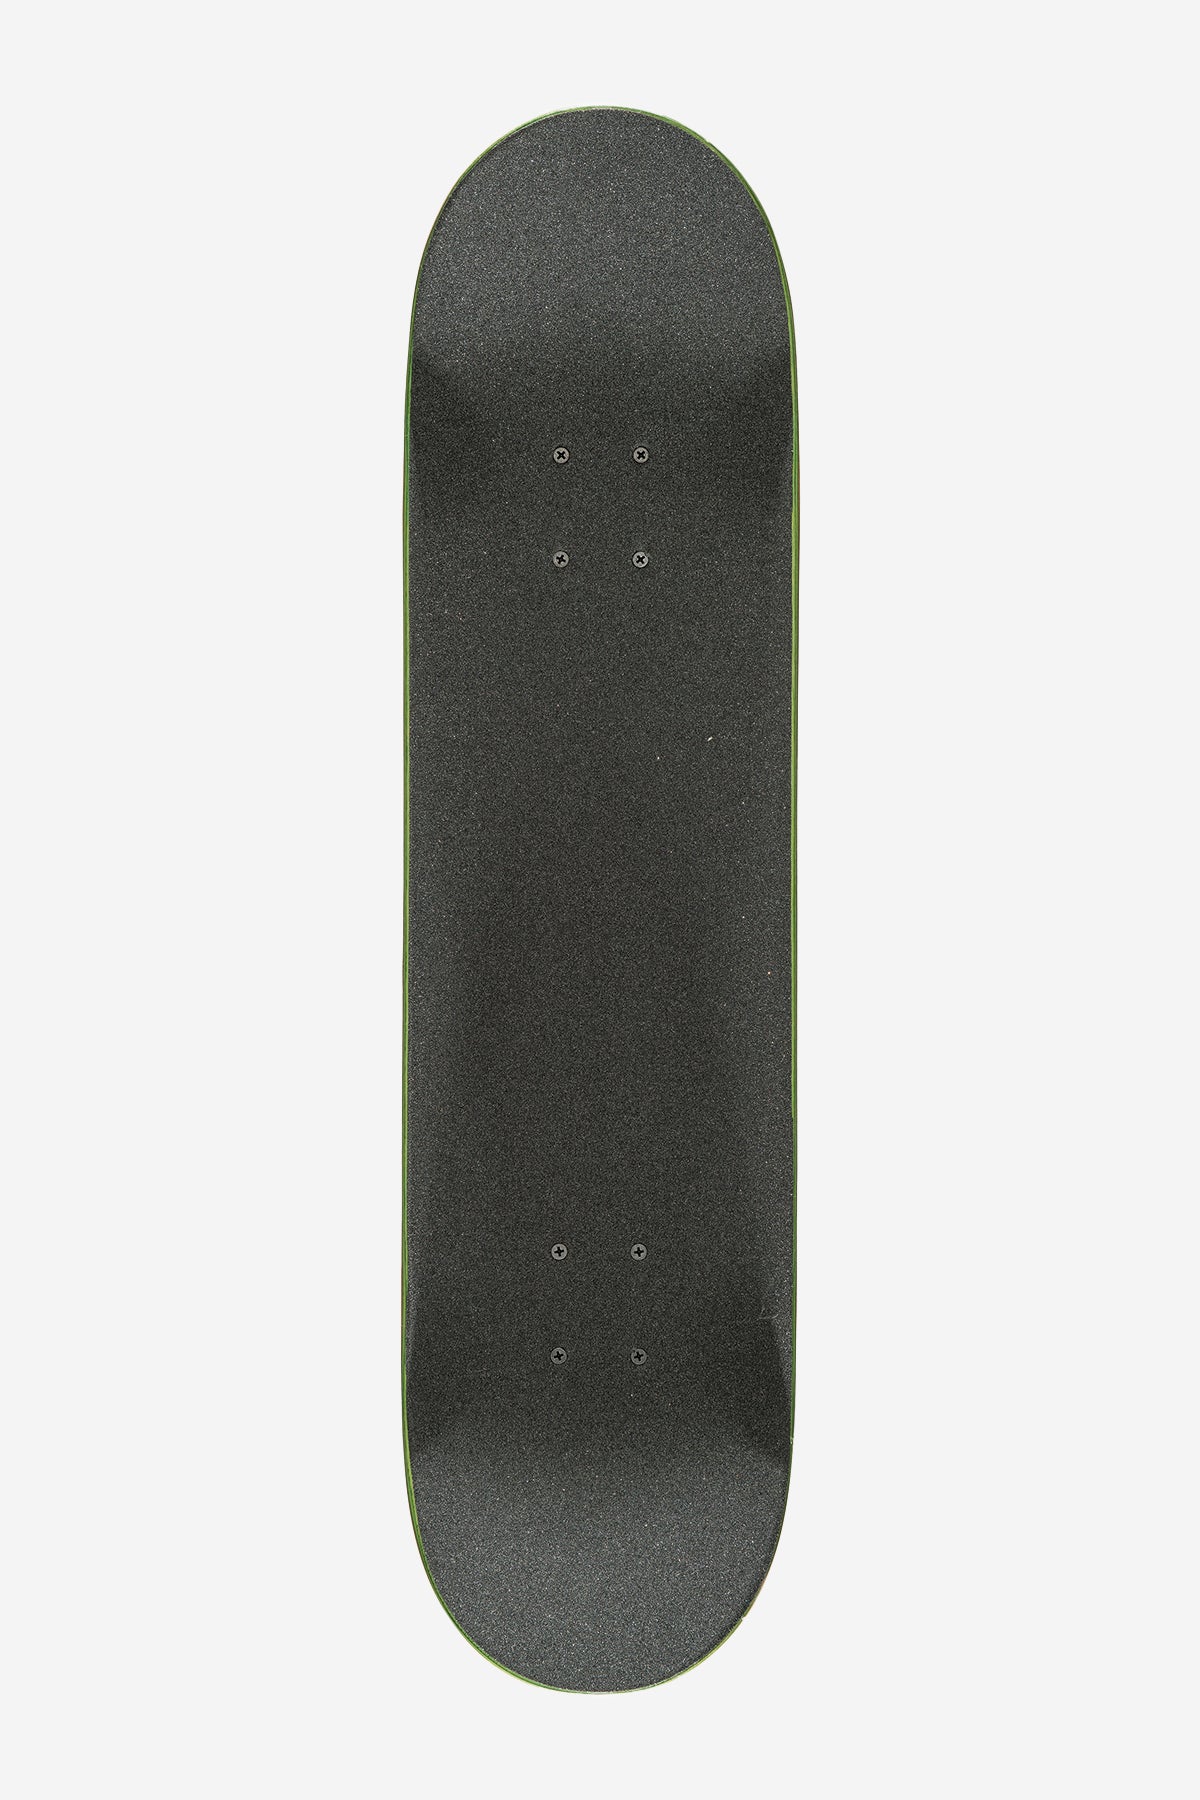 g1 palm off black 8.0" complet skateboard